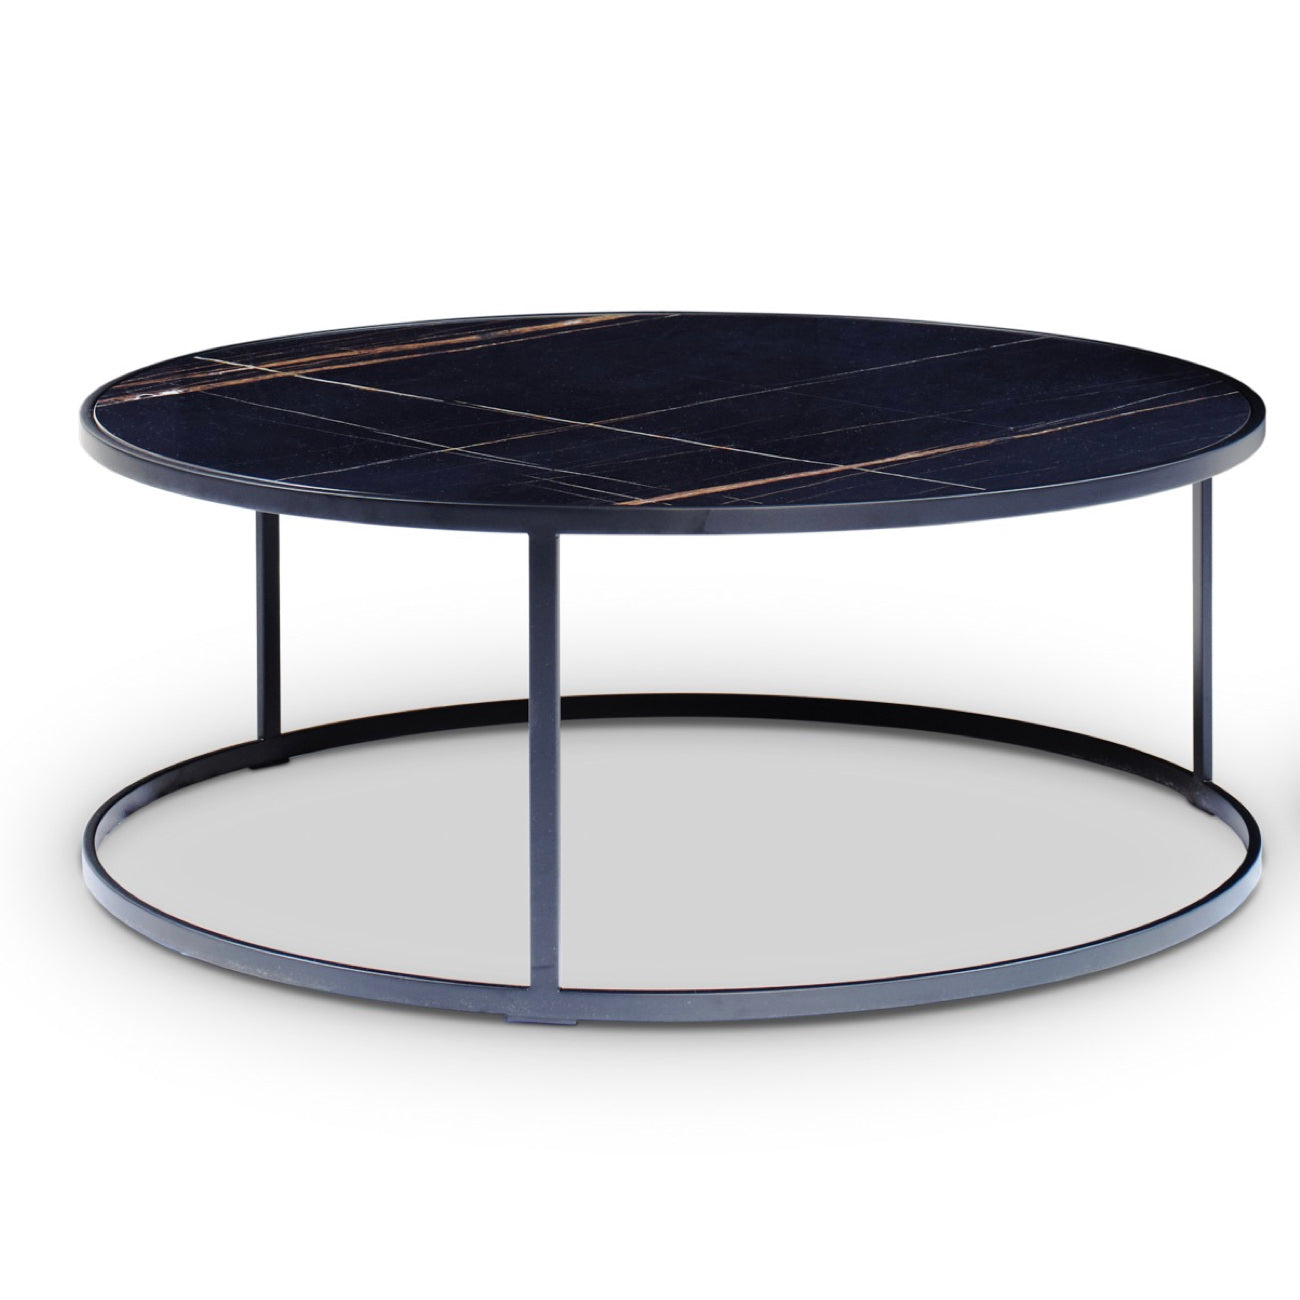 CAMEO 90-1 coffee table by Christine Kröncke Interior Design